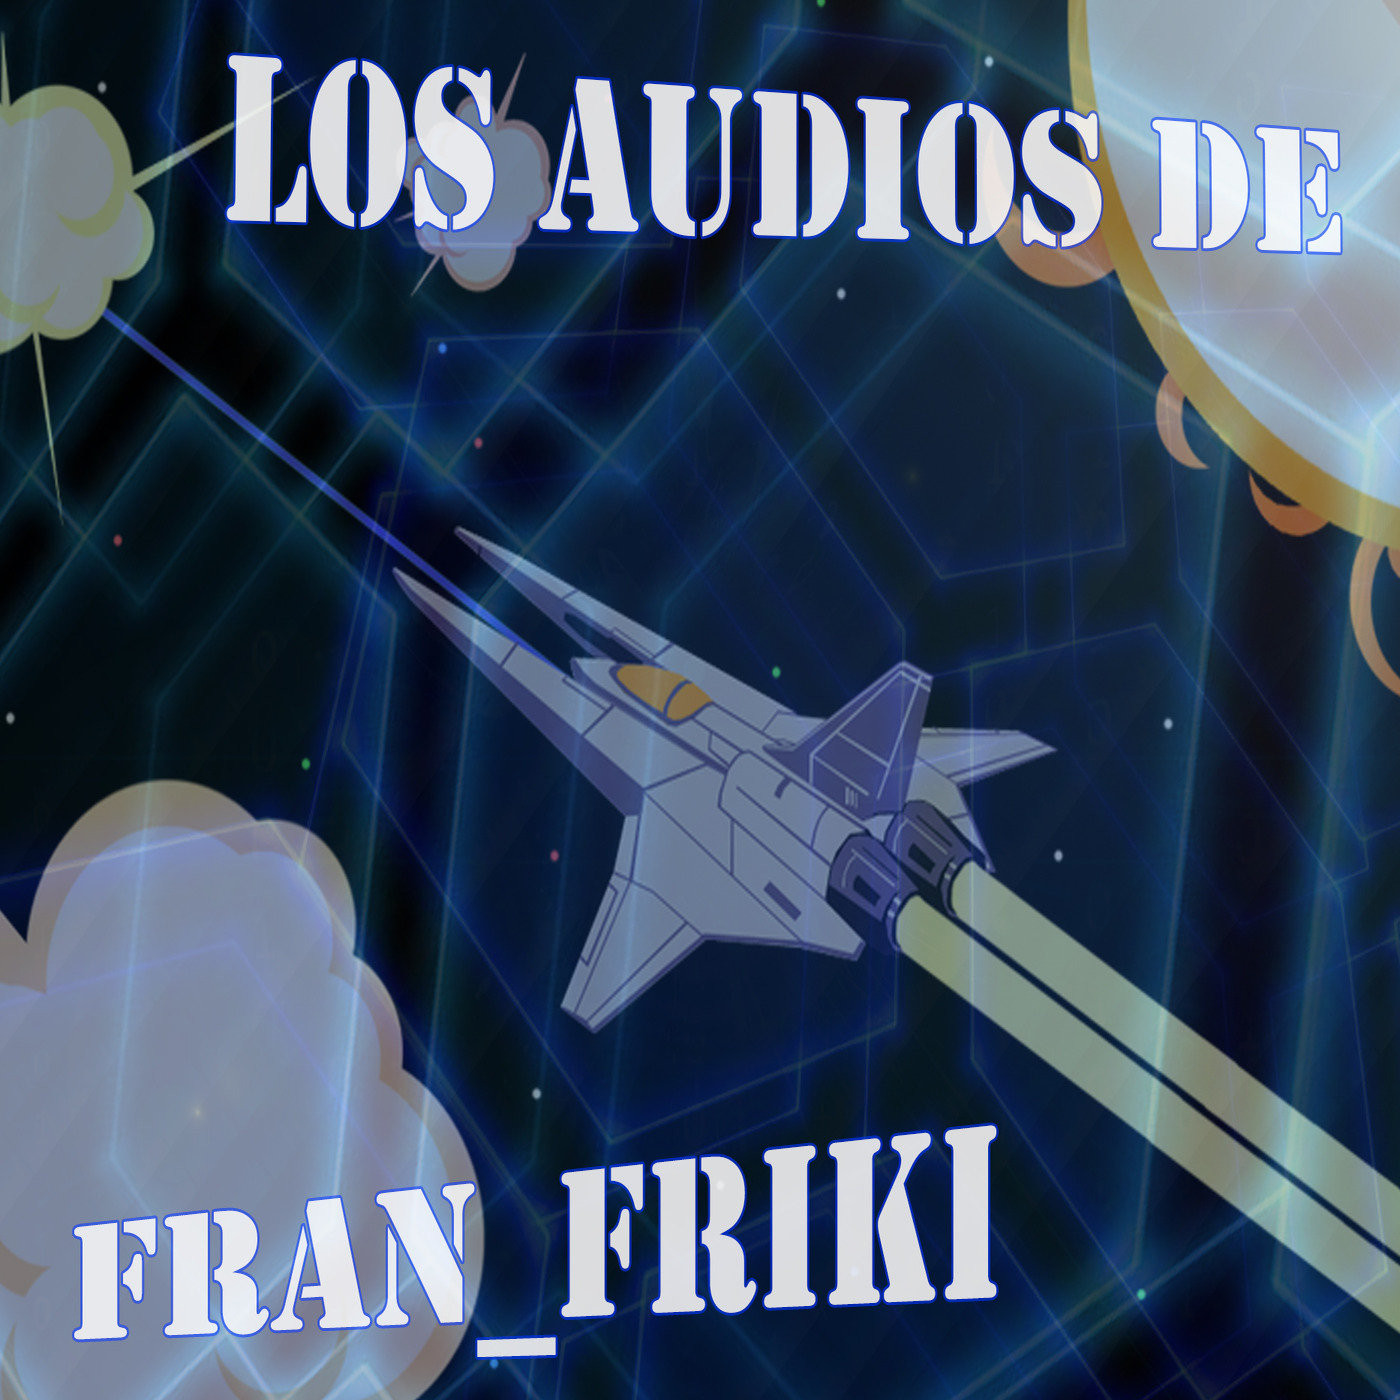 Los audios de fran_friki